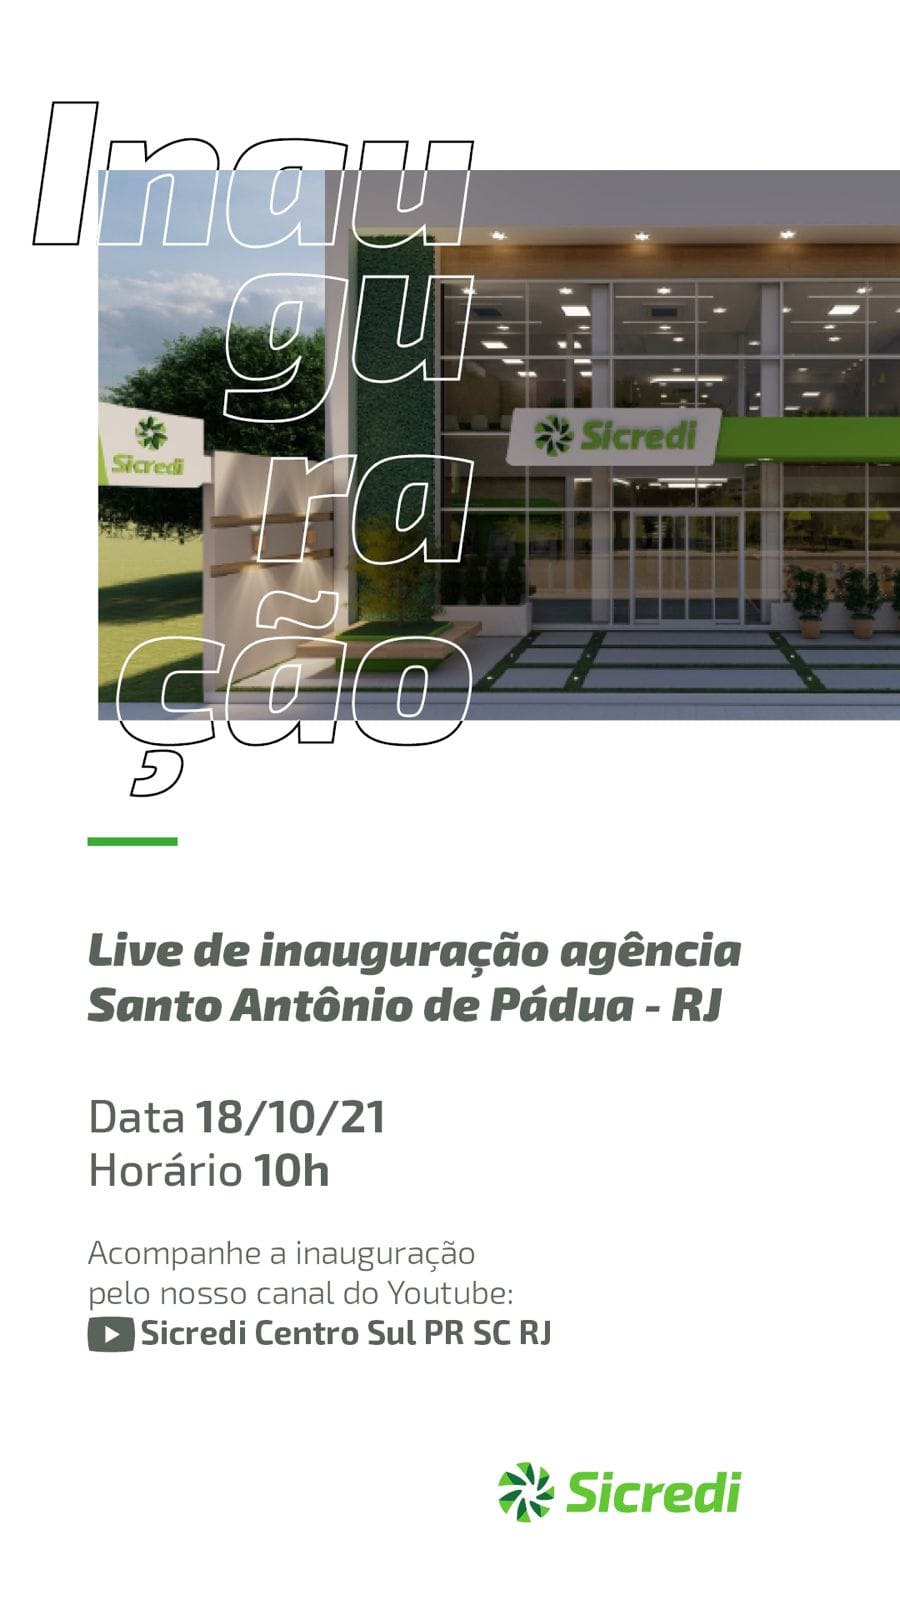 Sicredi irá inaugurar sua nova agencia em Pádua (RJ) no próximo dia 18